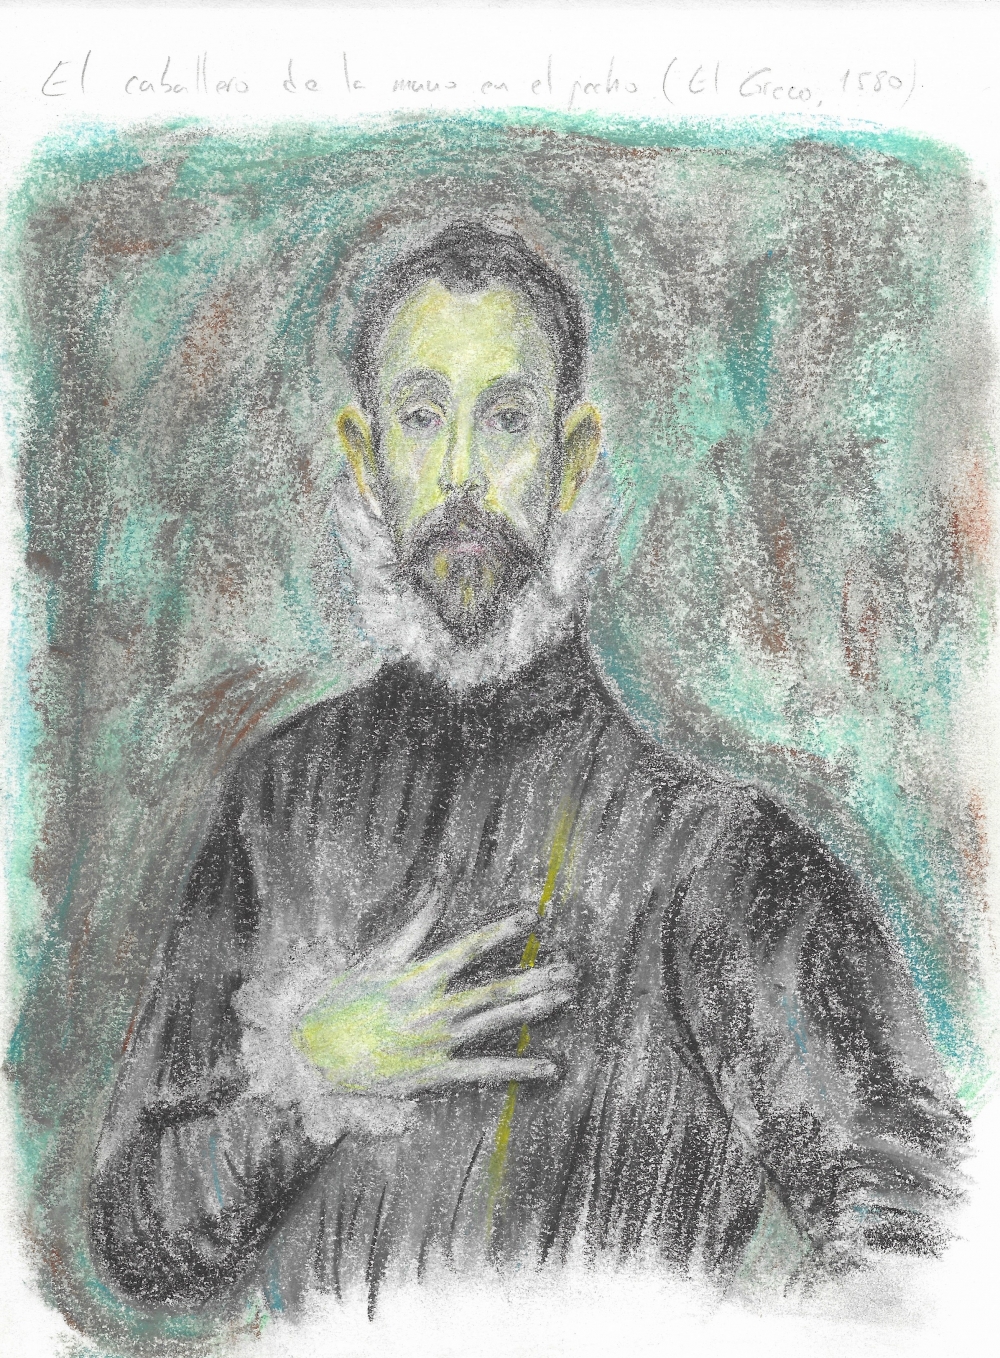 El caballero de la mano en el pecho (El Greco, 1580)